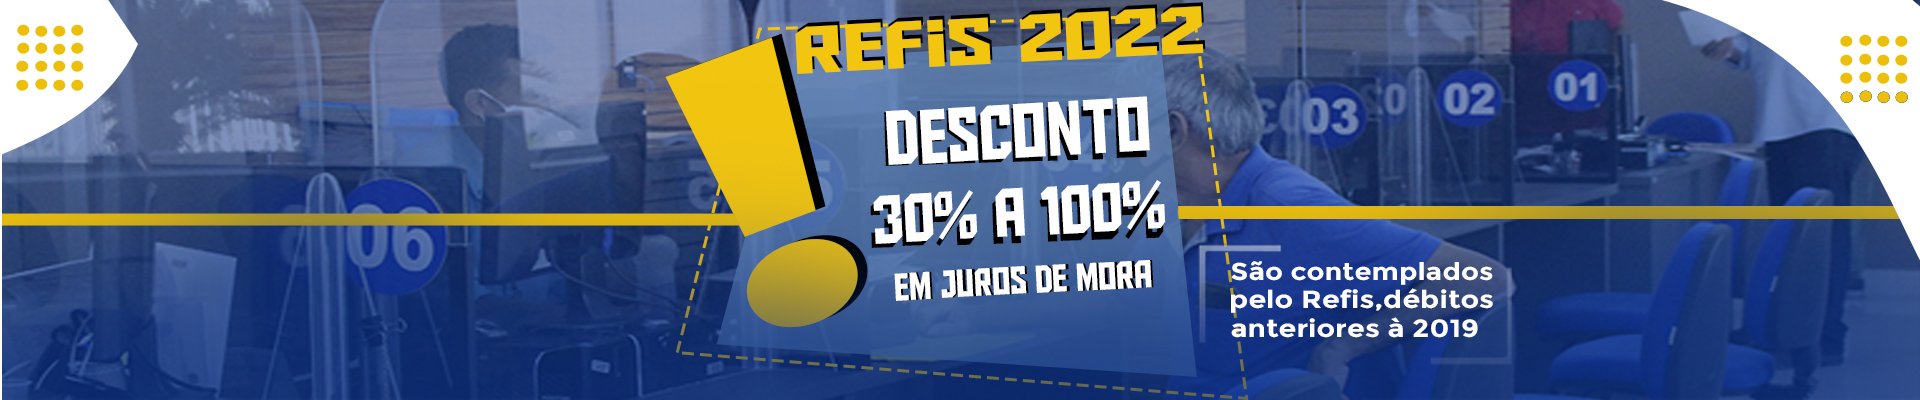 Crea Mato Grosso  prorroga REFIS até o final de 2022